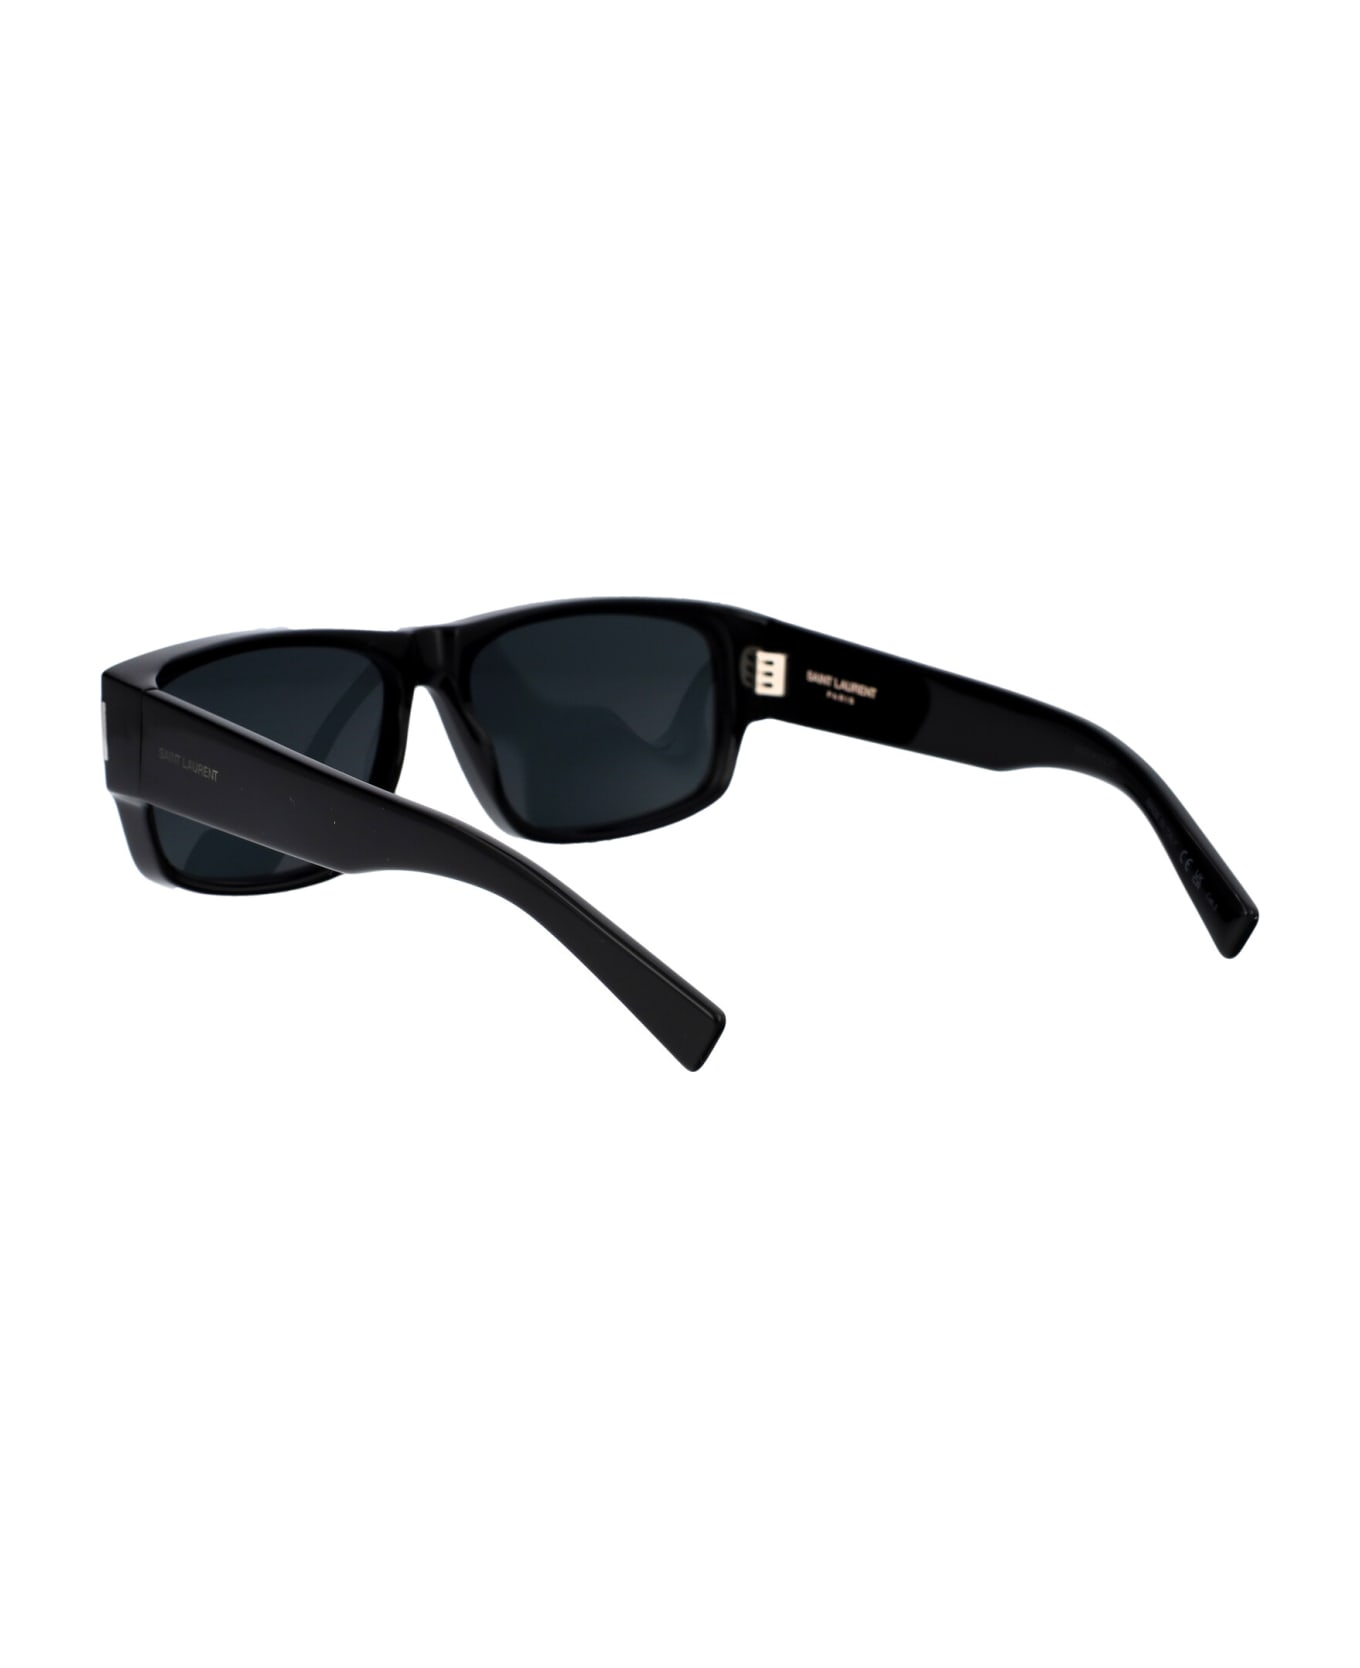 Saint Laurent Eyewear Sl 689 Sunglasses - 001 BLACK BLACK BLACK